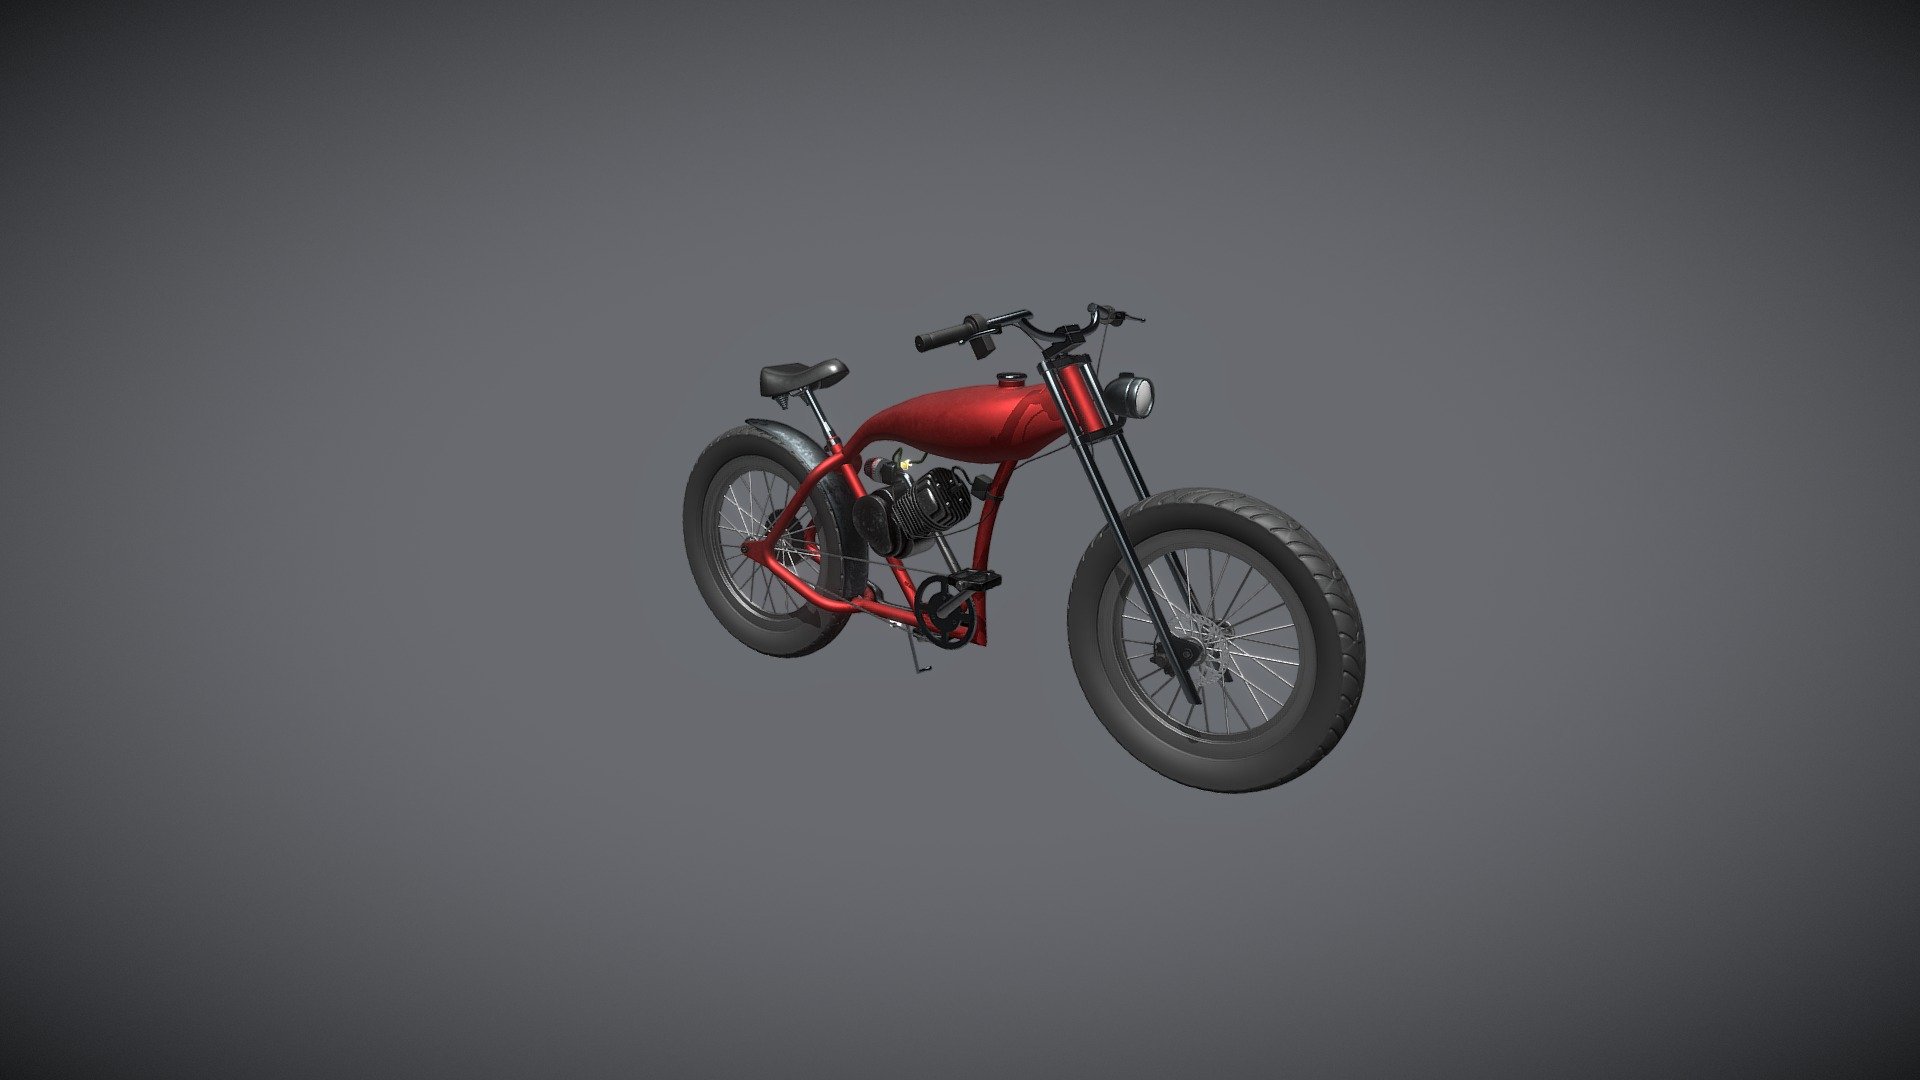 Motorized bike